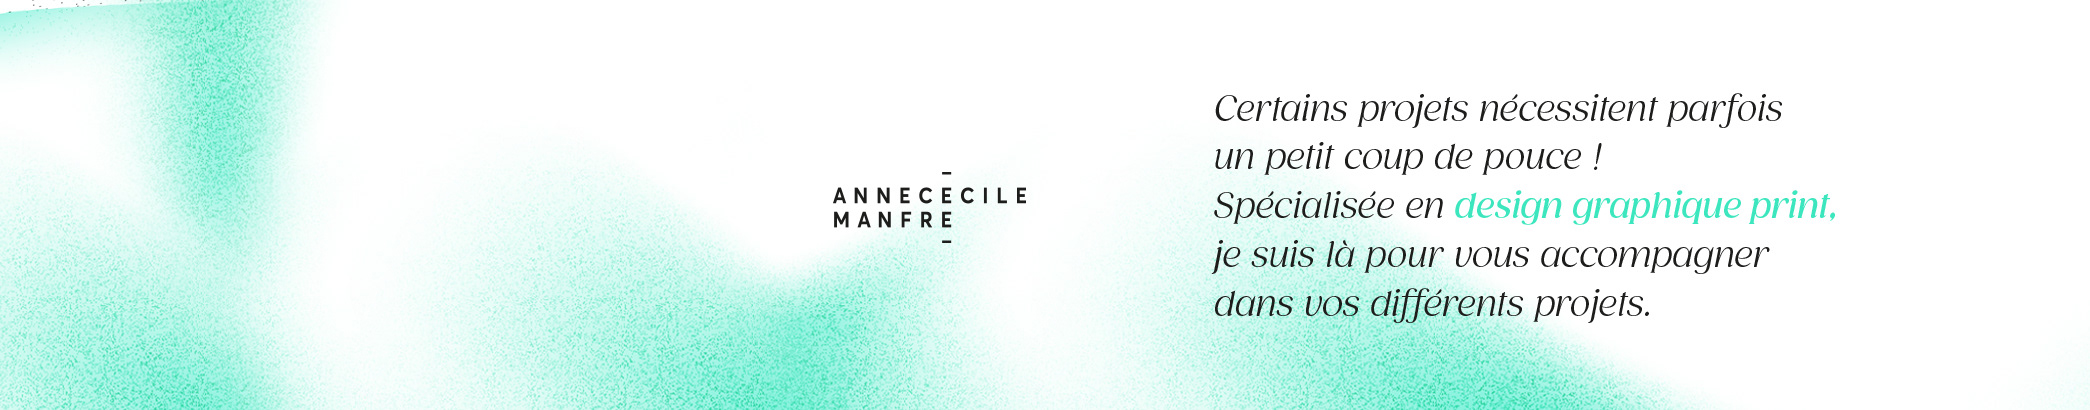 Anne-Cécile Manfré's profile banner